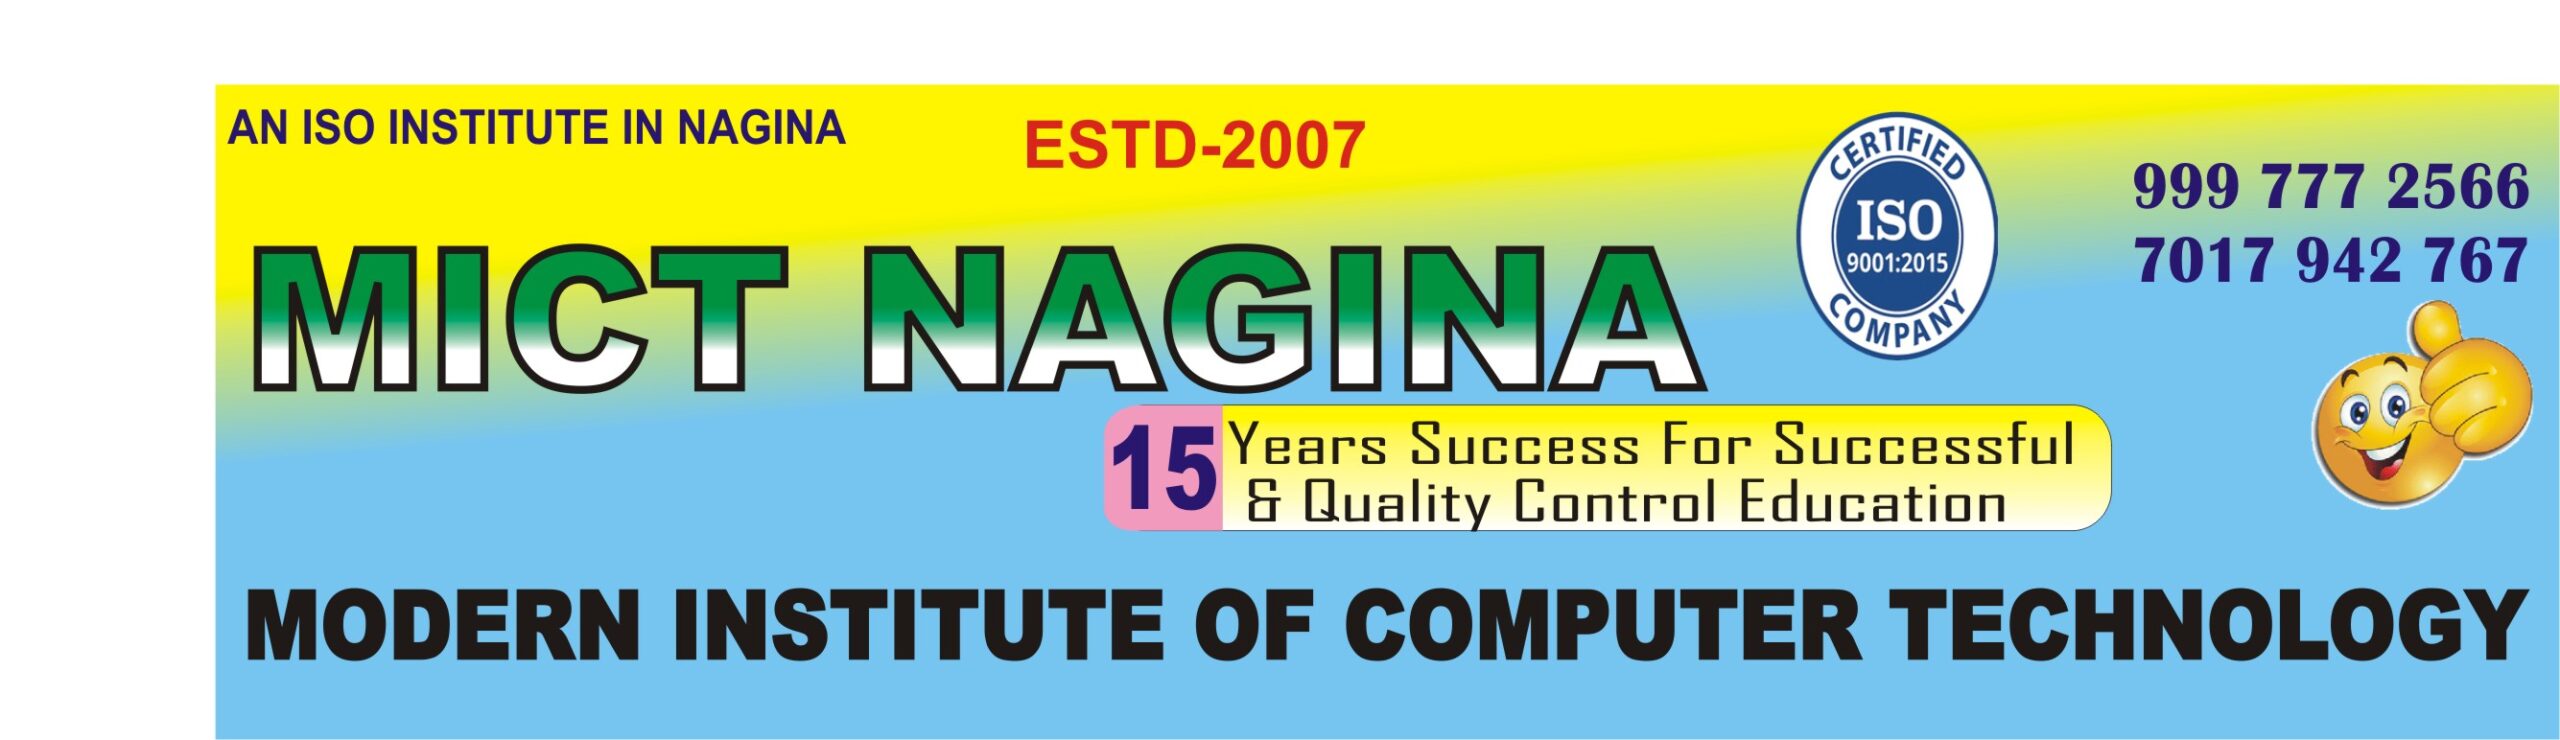 MICT COMPUTER INSTITUTE NAGINA